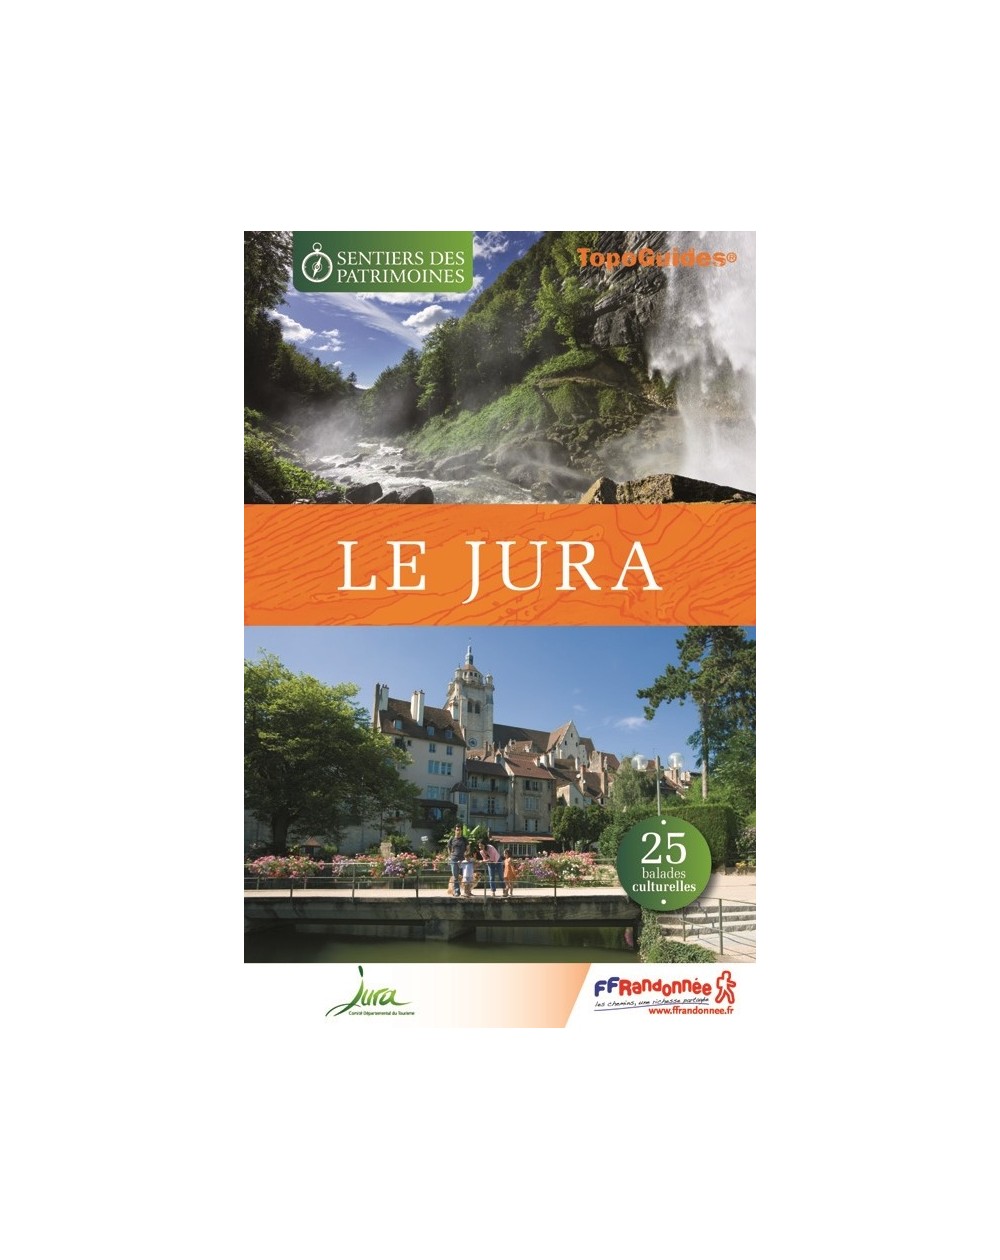 Les sentiers des patrimoines dans le Jura | Topoguide FFRP